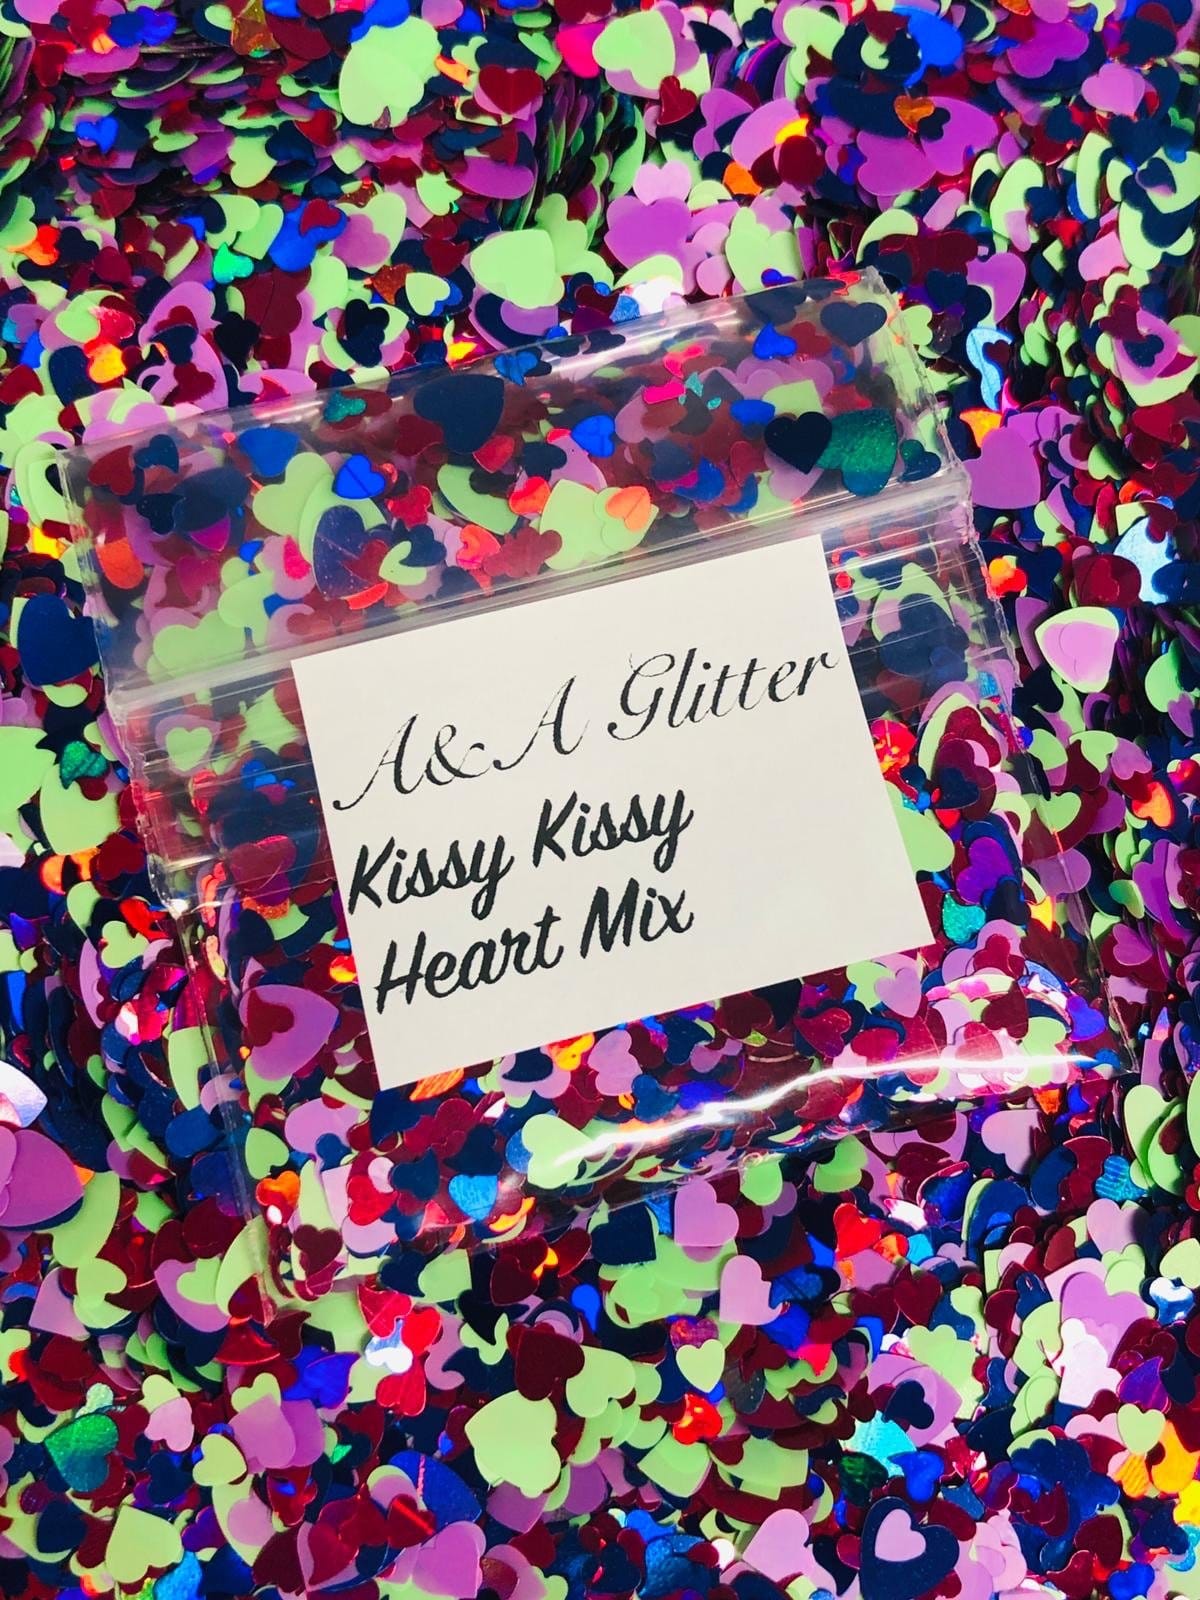 Kissy Kissy Heart Mix